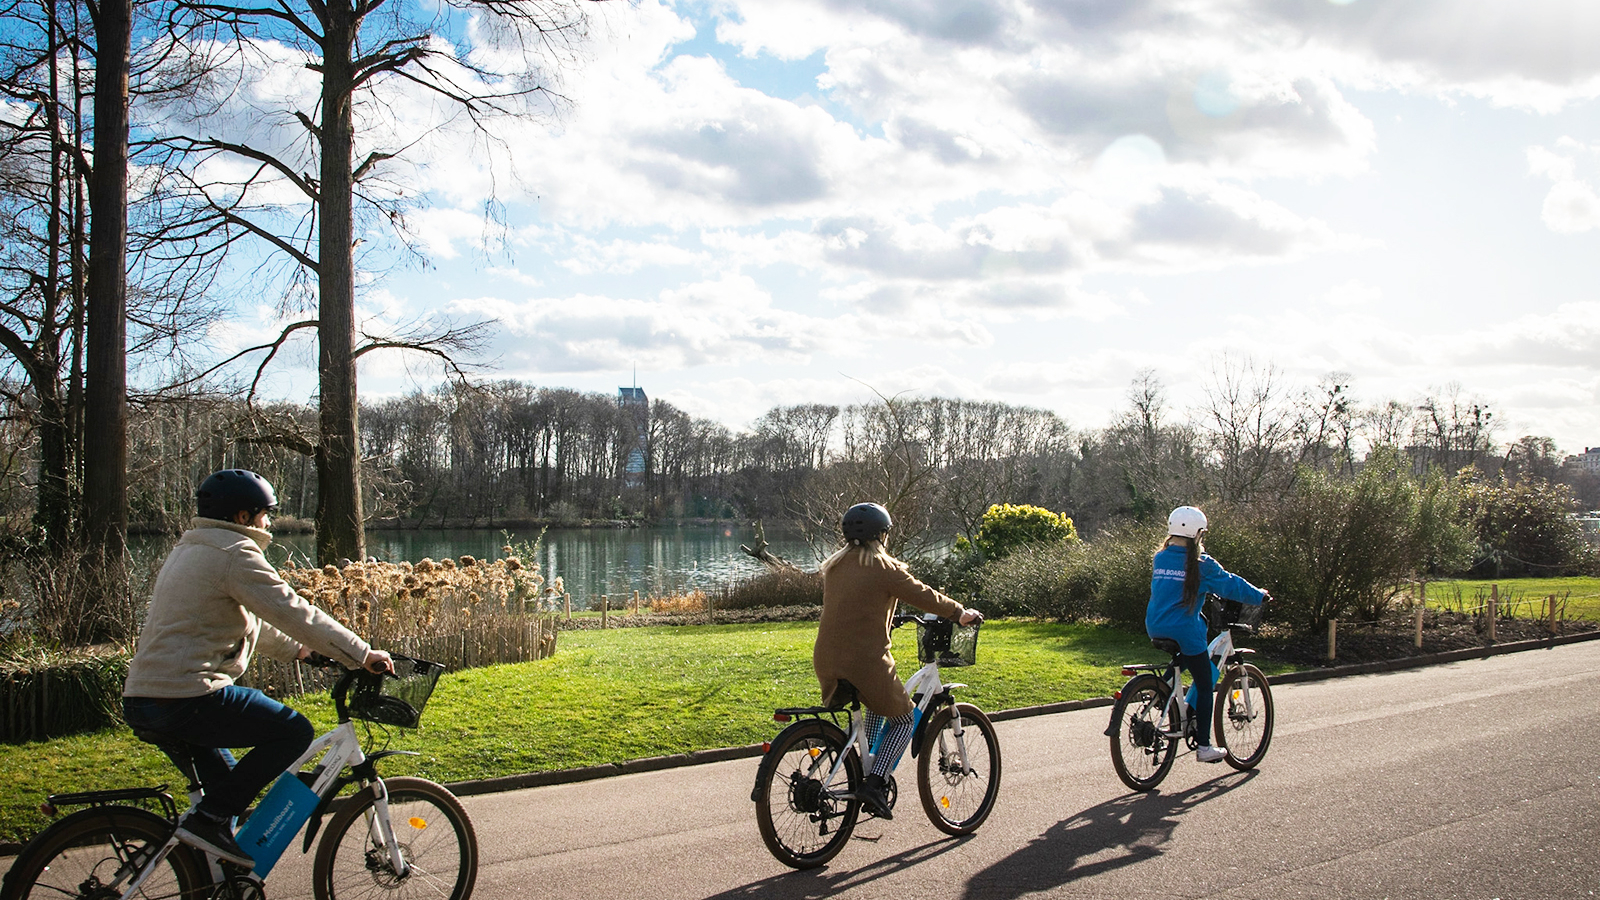 Activité de plein air à Lyon : visiter le parc de la Tête d'Or à vélo